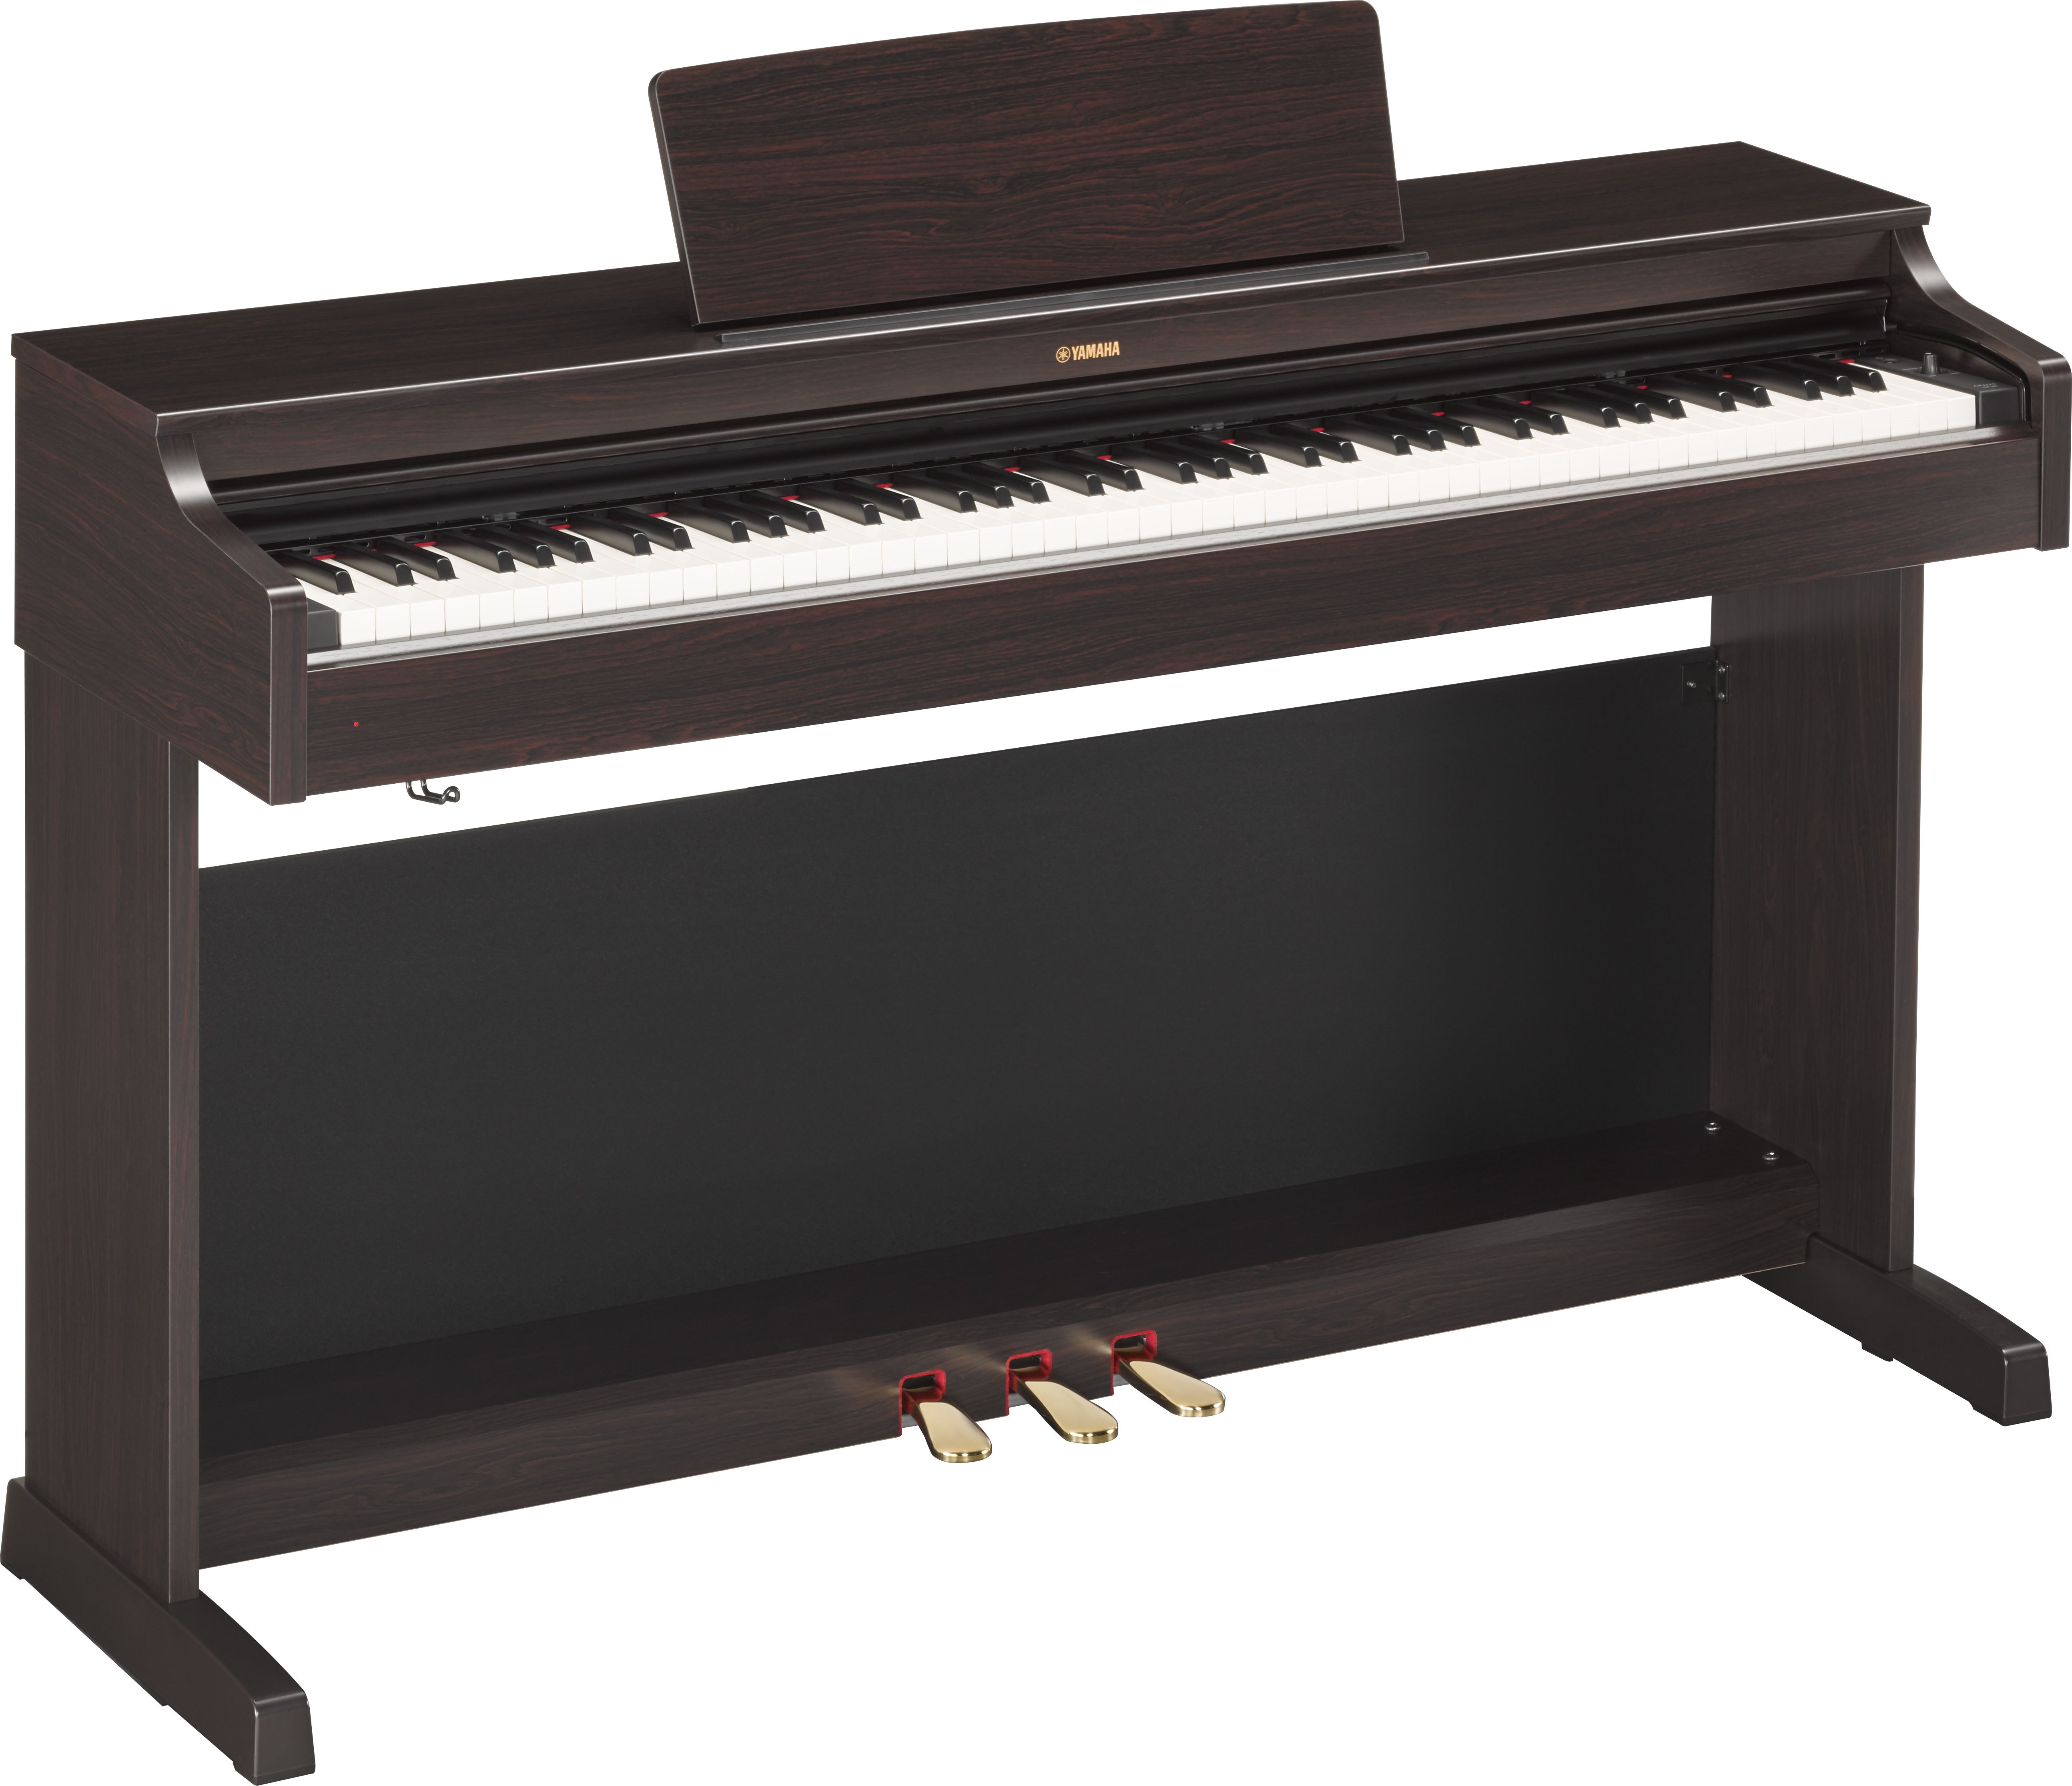 YDP-163 - Accessories - ARIUS - Pianos - Musical Instruments 